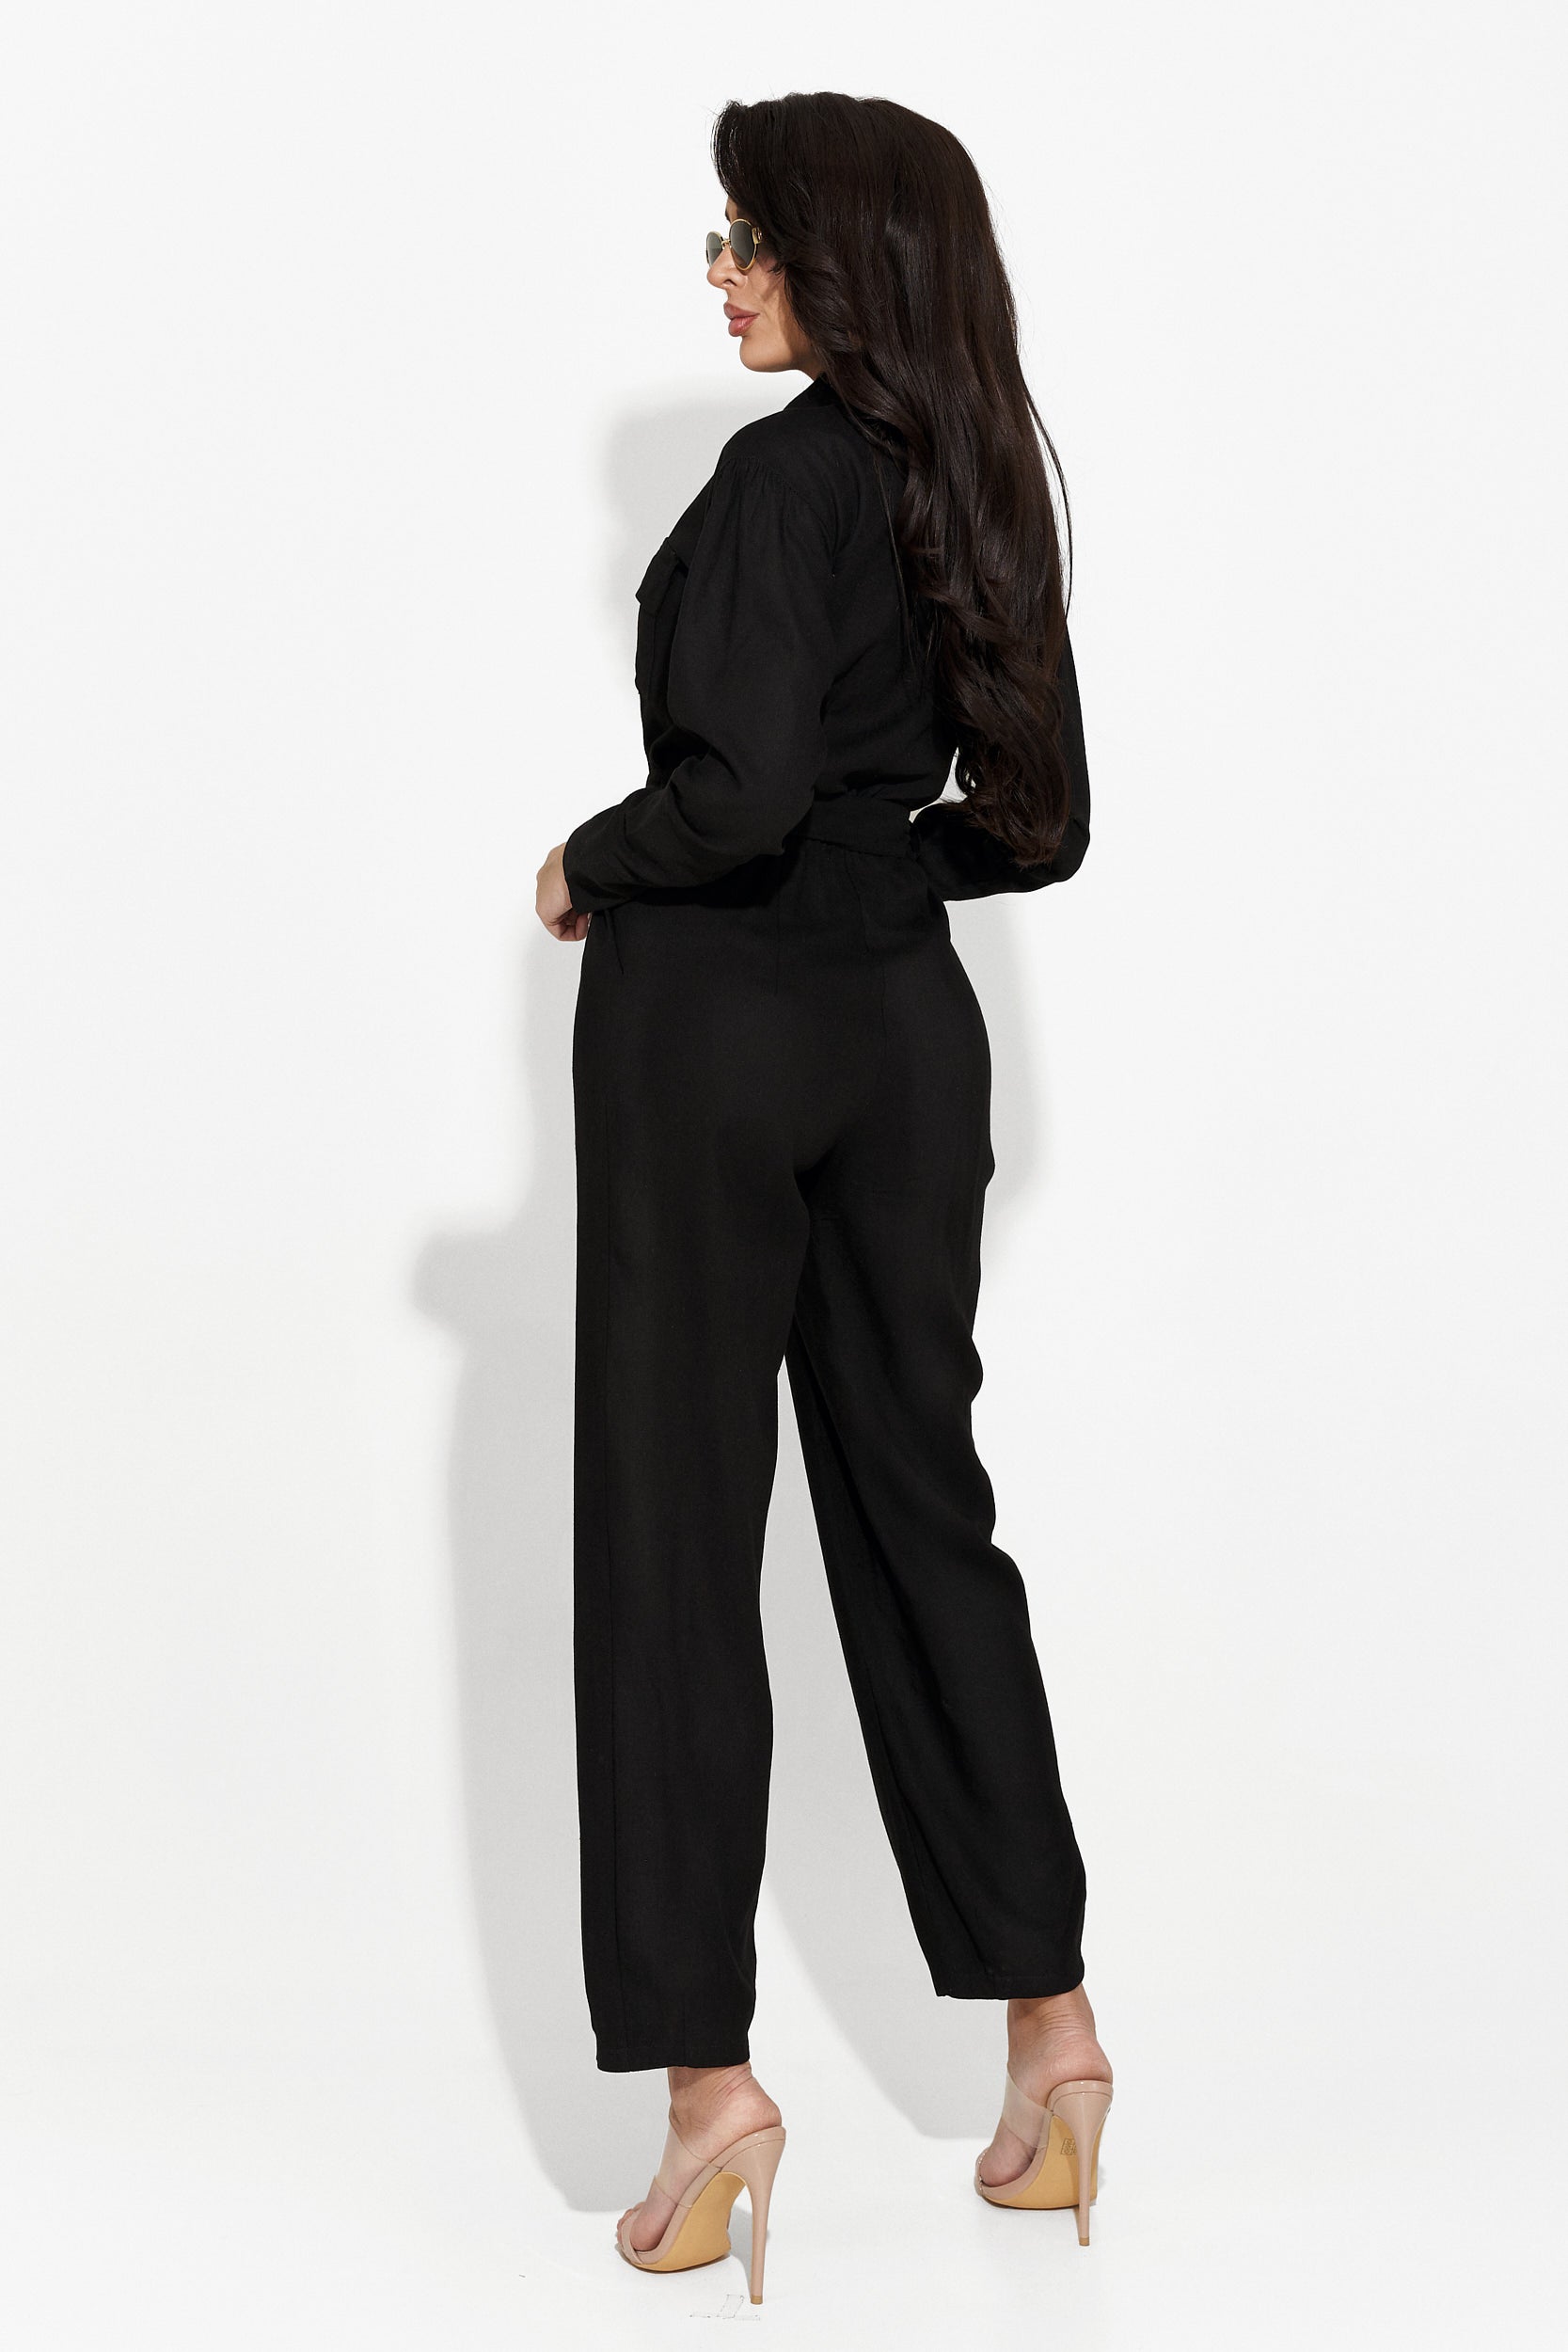 Ladies casual overalls black Ventasy Bogas